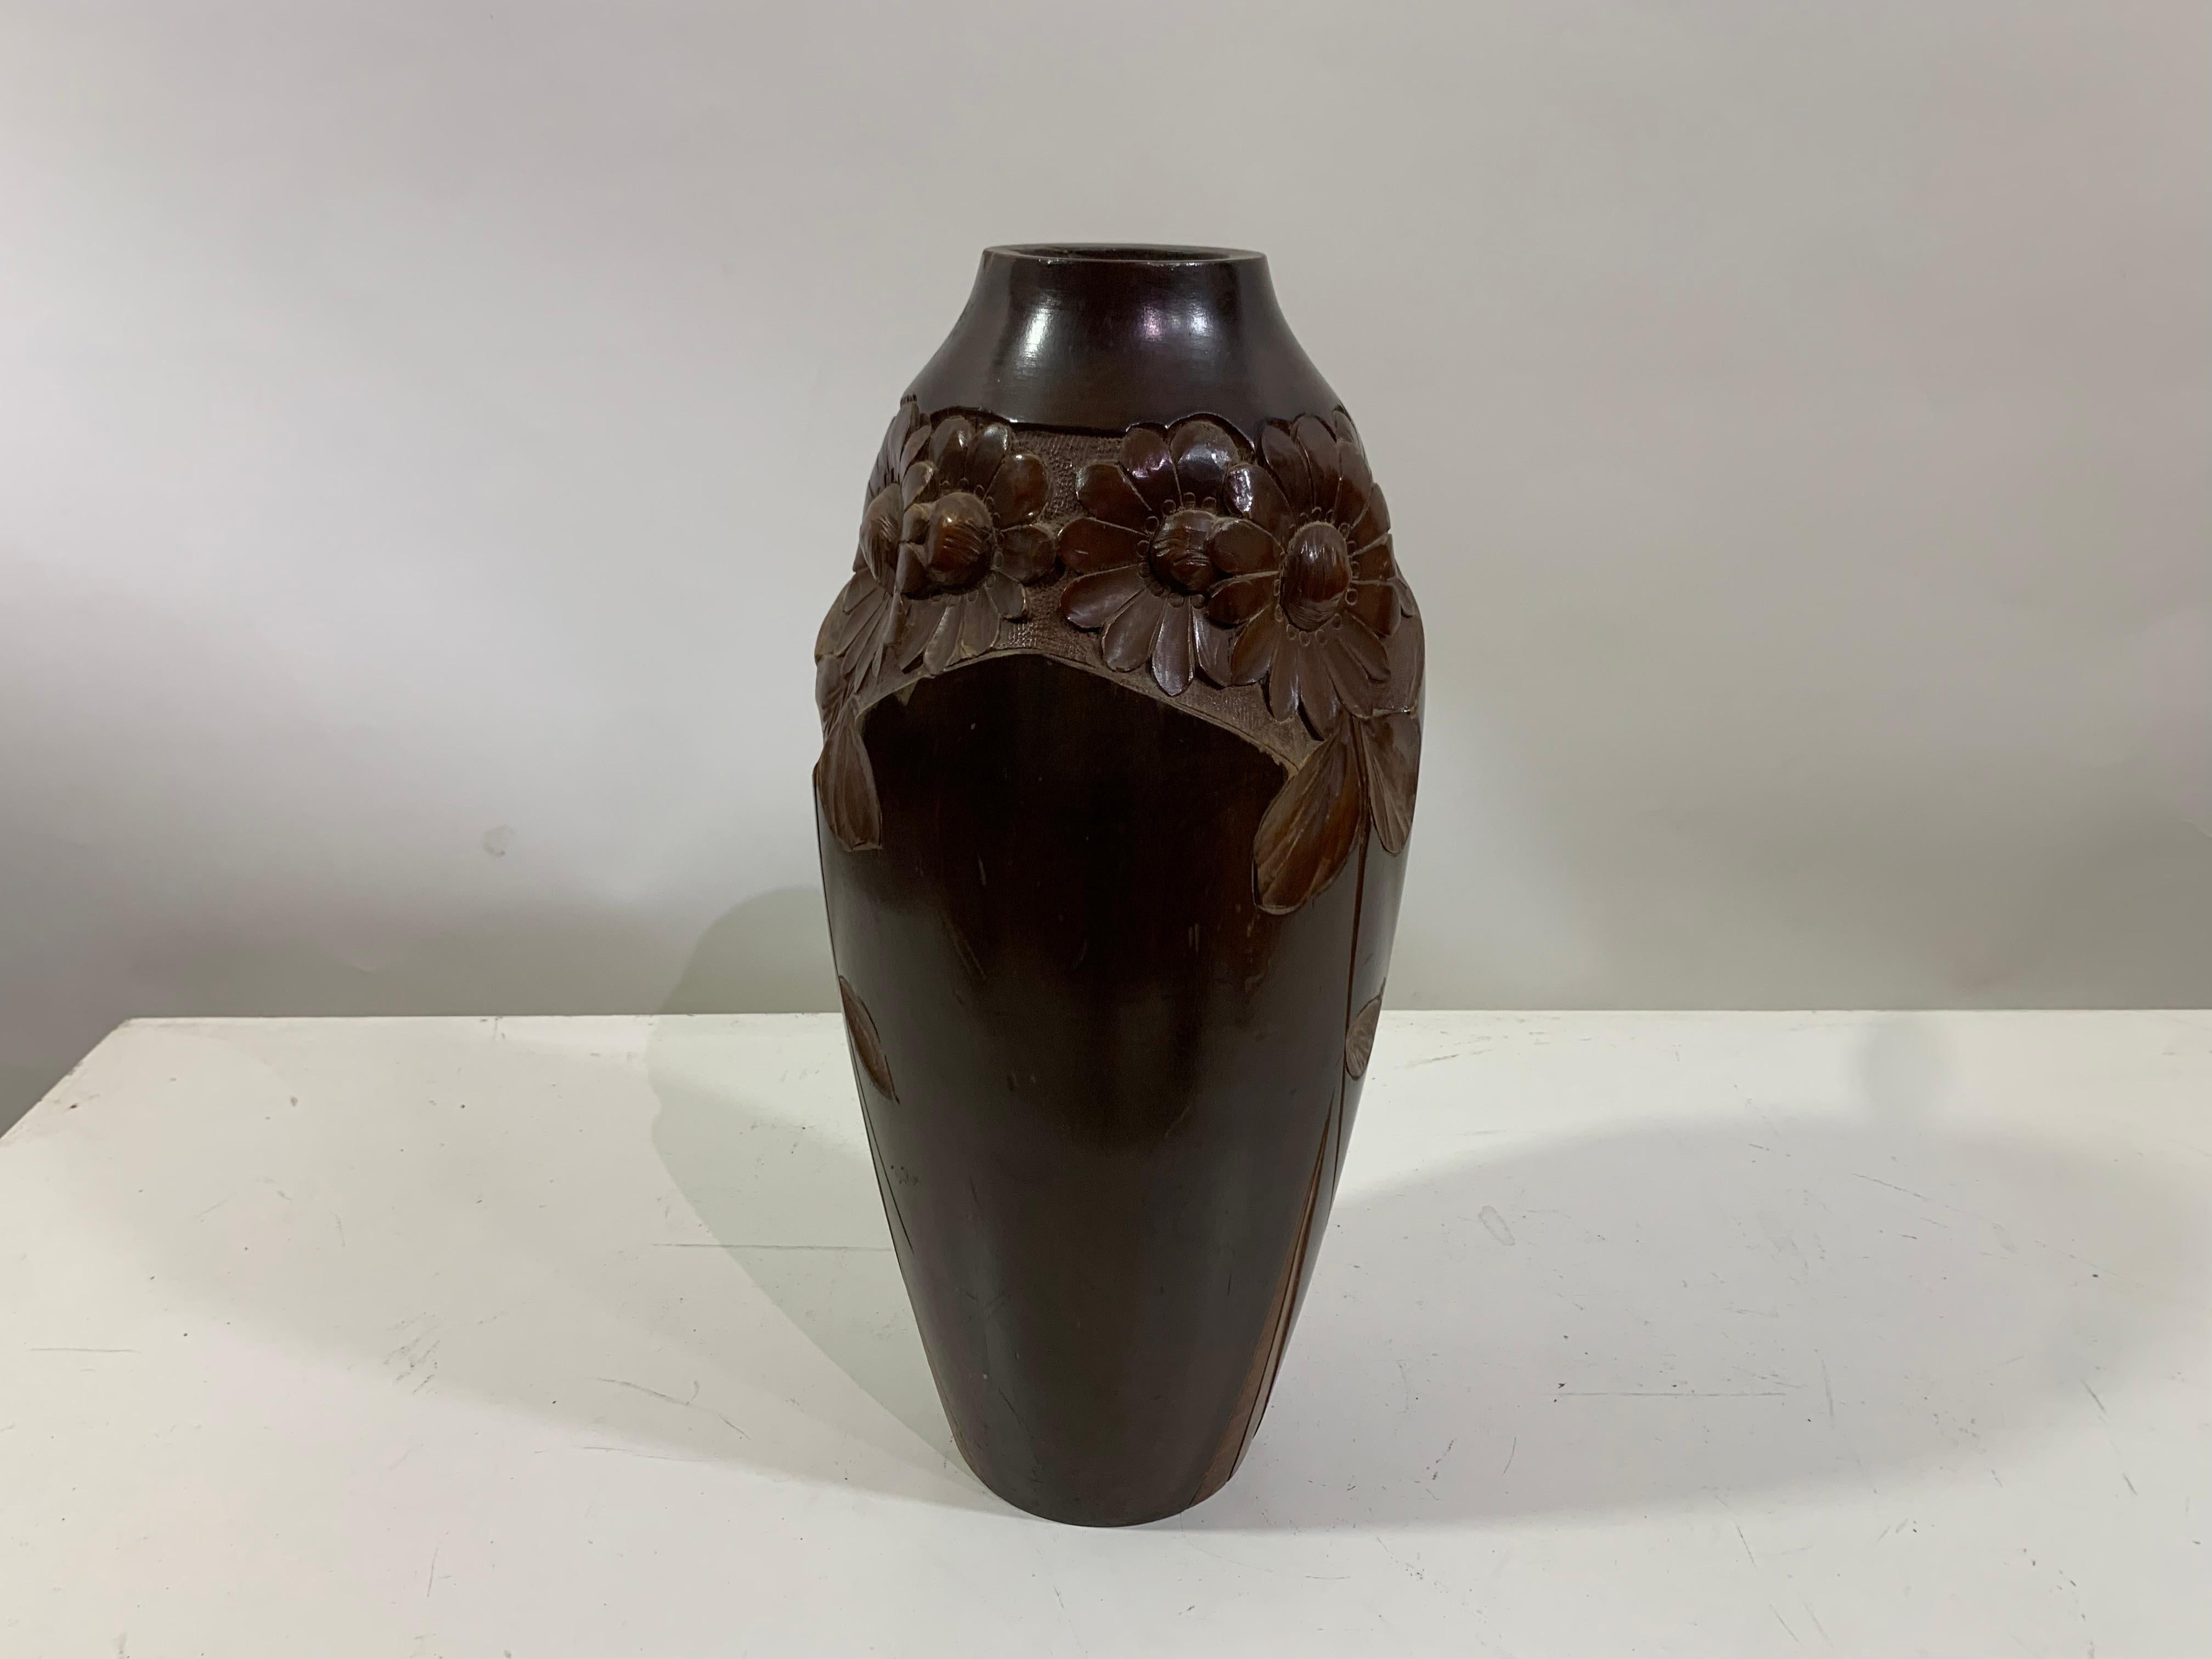 Handgefertigte Vintage-Vase aus Holz, signiert Dupia, mit Blumendarstellung.

Dieses einzigartige Stück ist ein Zeugnis für die zeitlose Anziehungskraft handgefertigter Kunst. Sie verbindet nahtlos den Vintage-Charme der Vergangenheit mit dem Charme